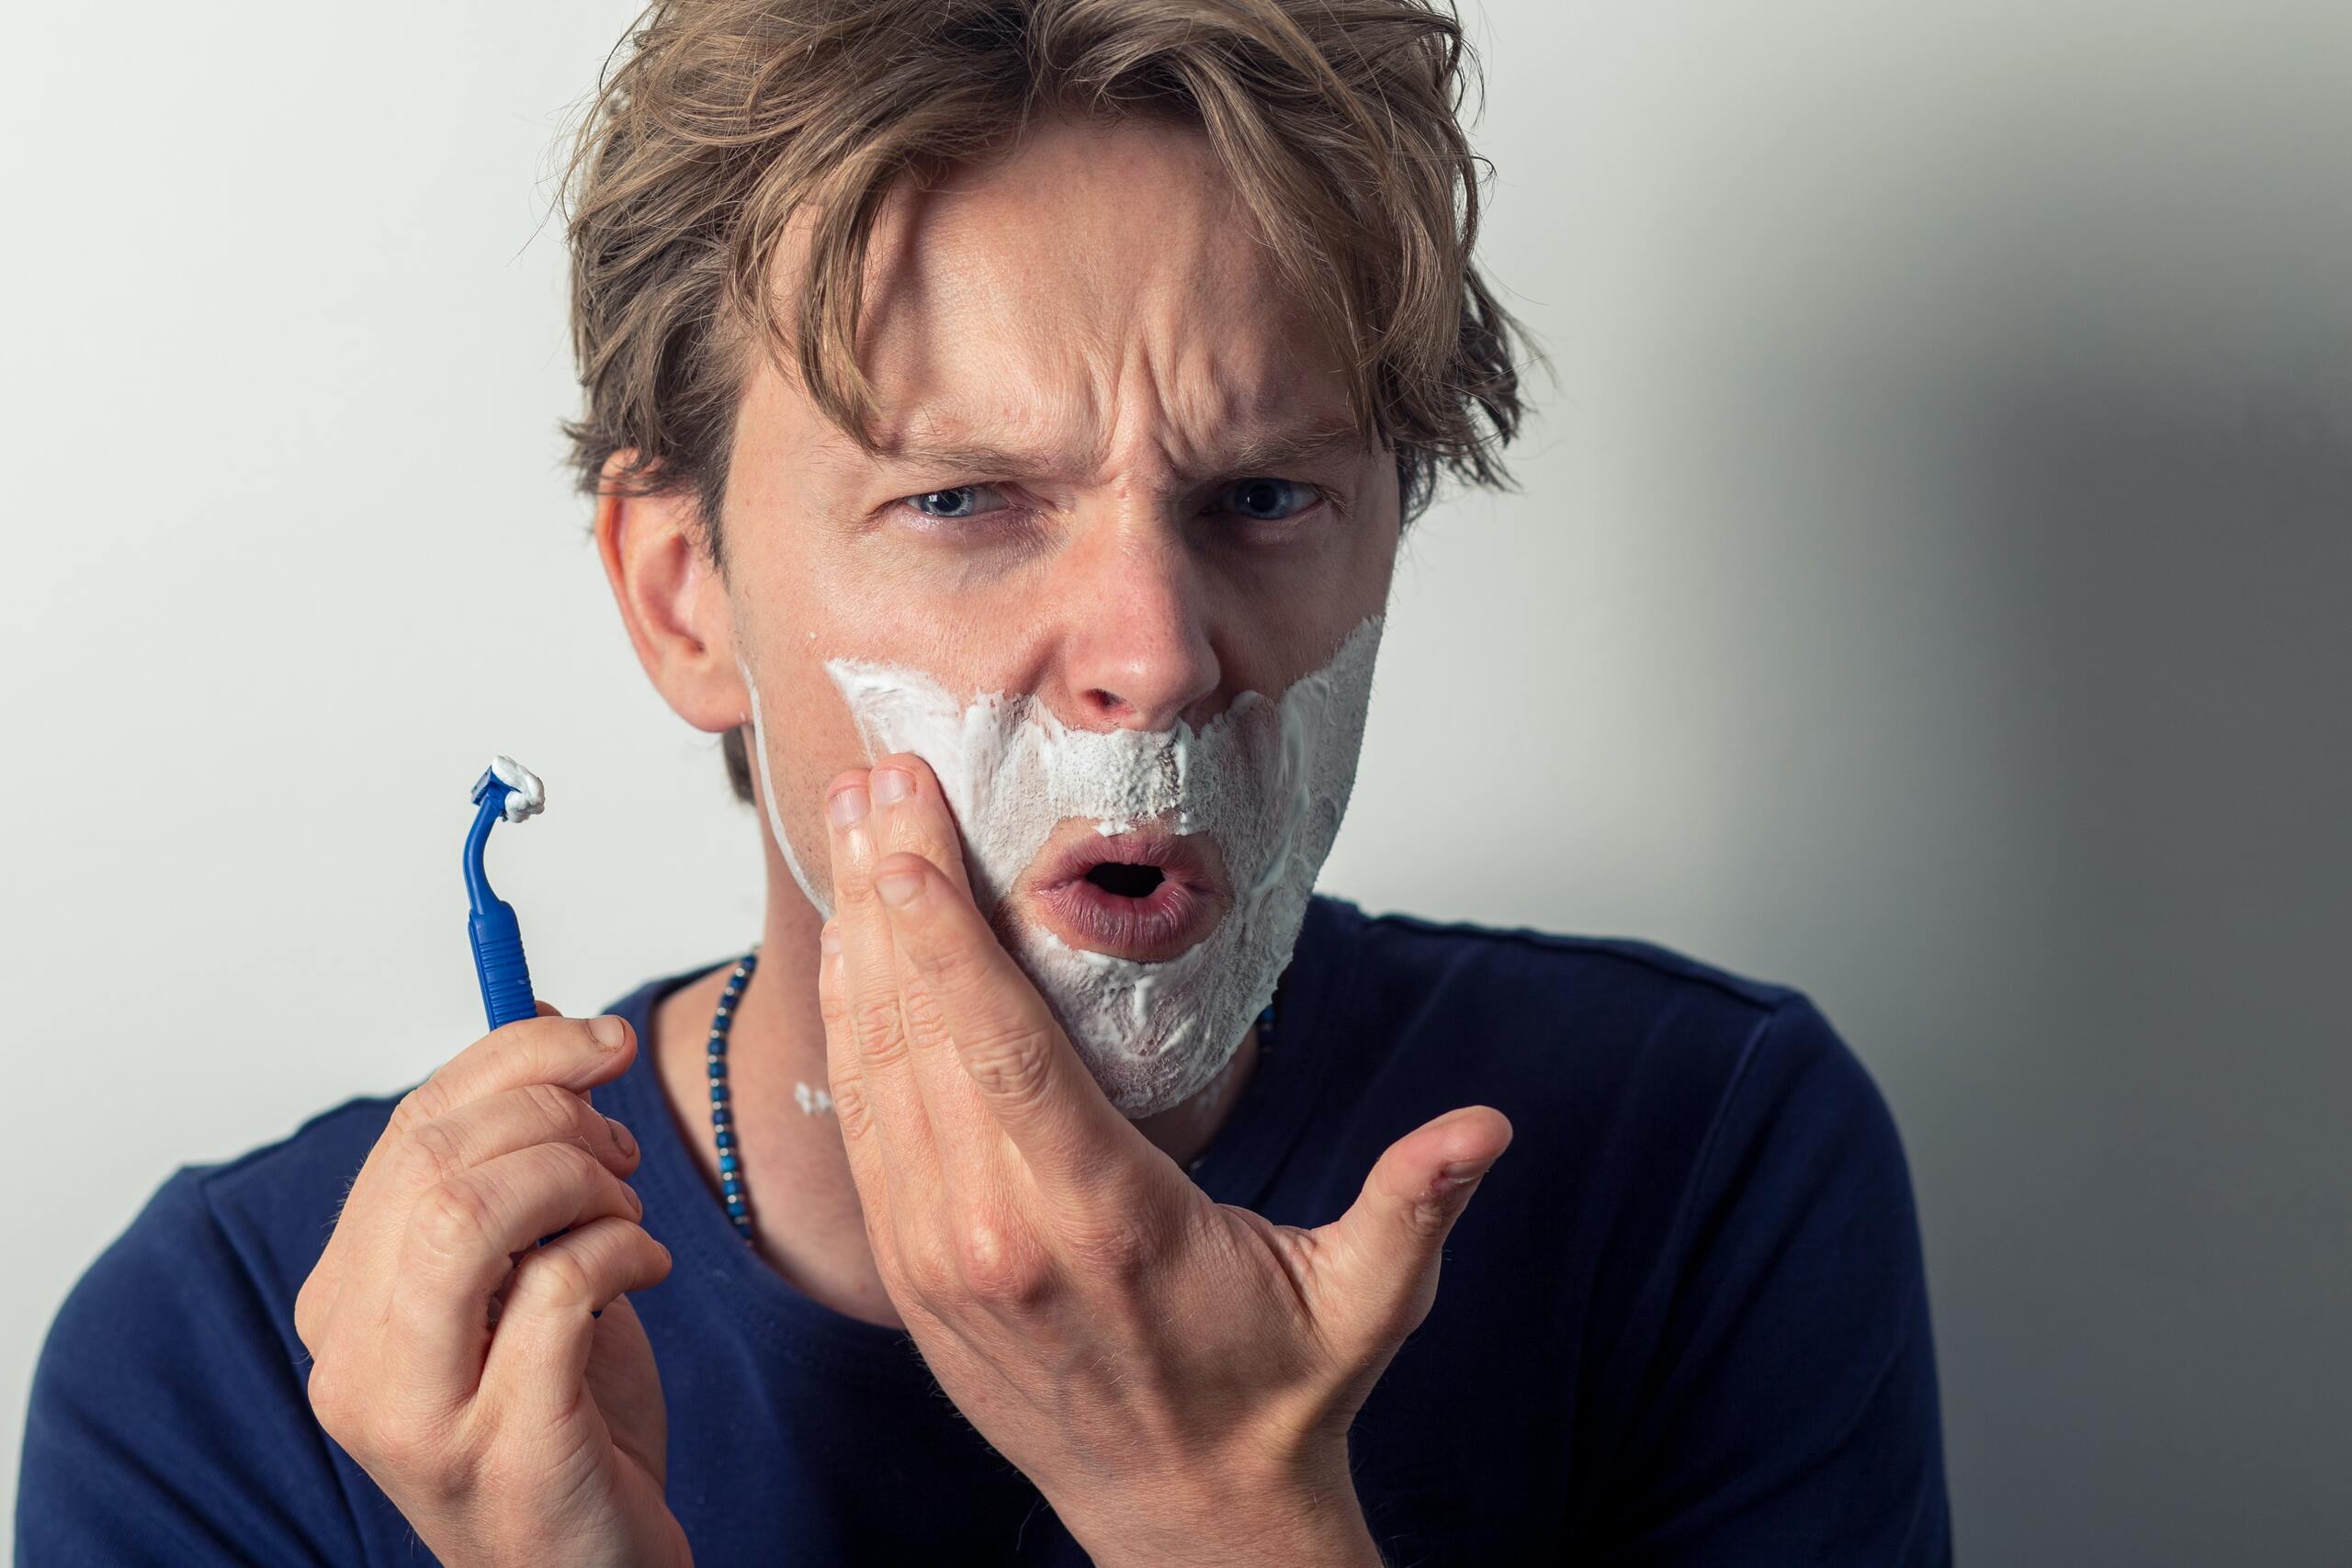 What is shaving rash